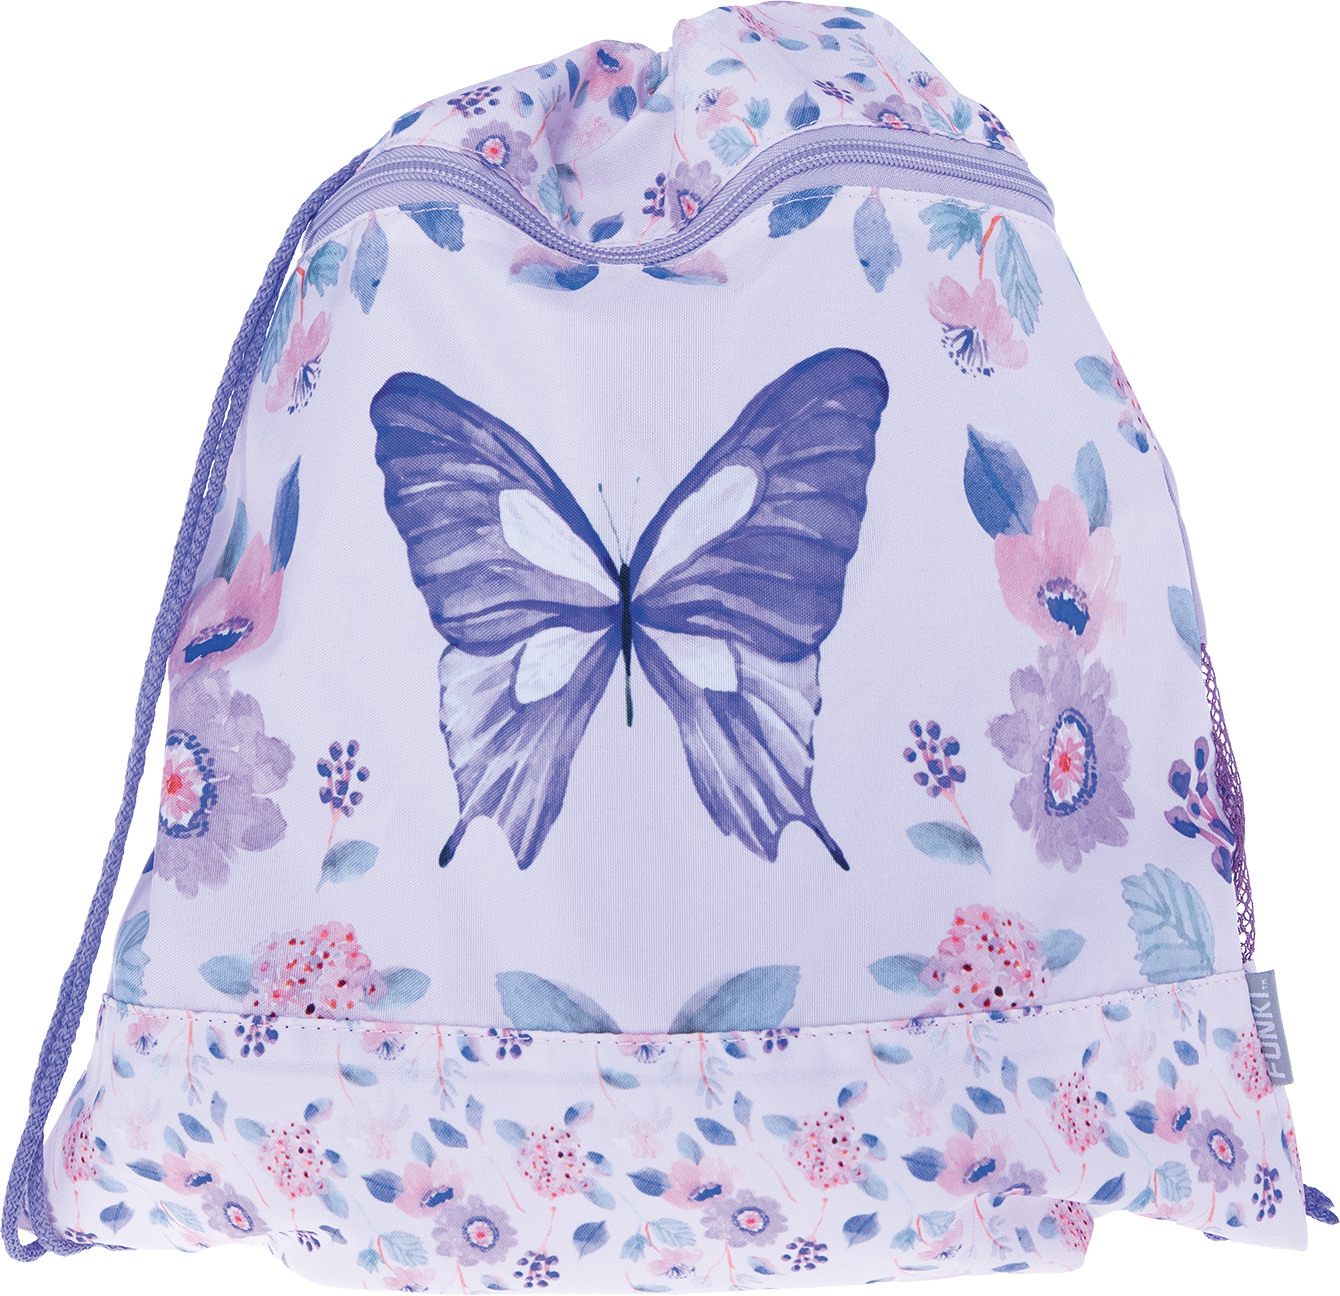 FUNKI Flexi-Bag Set Butterfly 6040.614 multicolor 5 pcs.